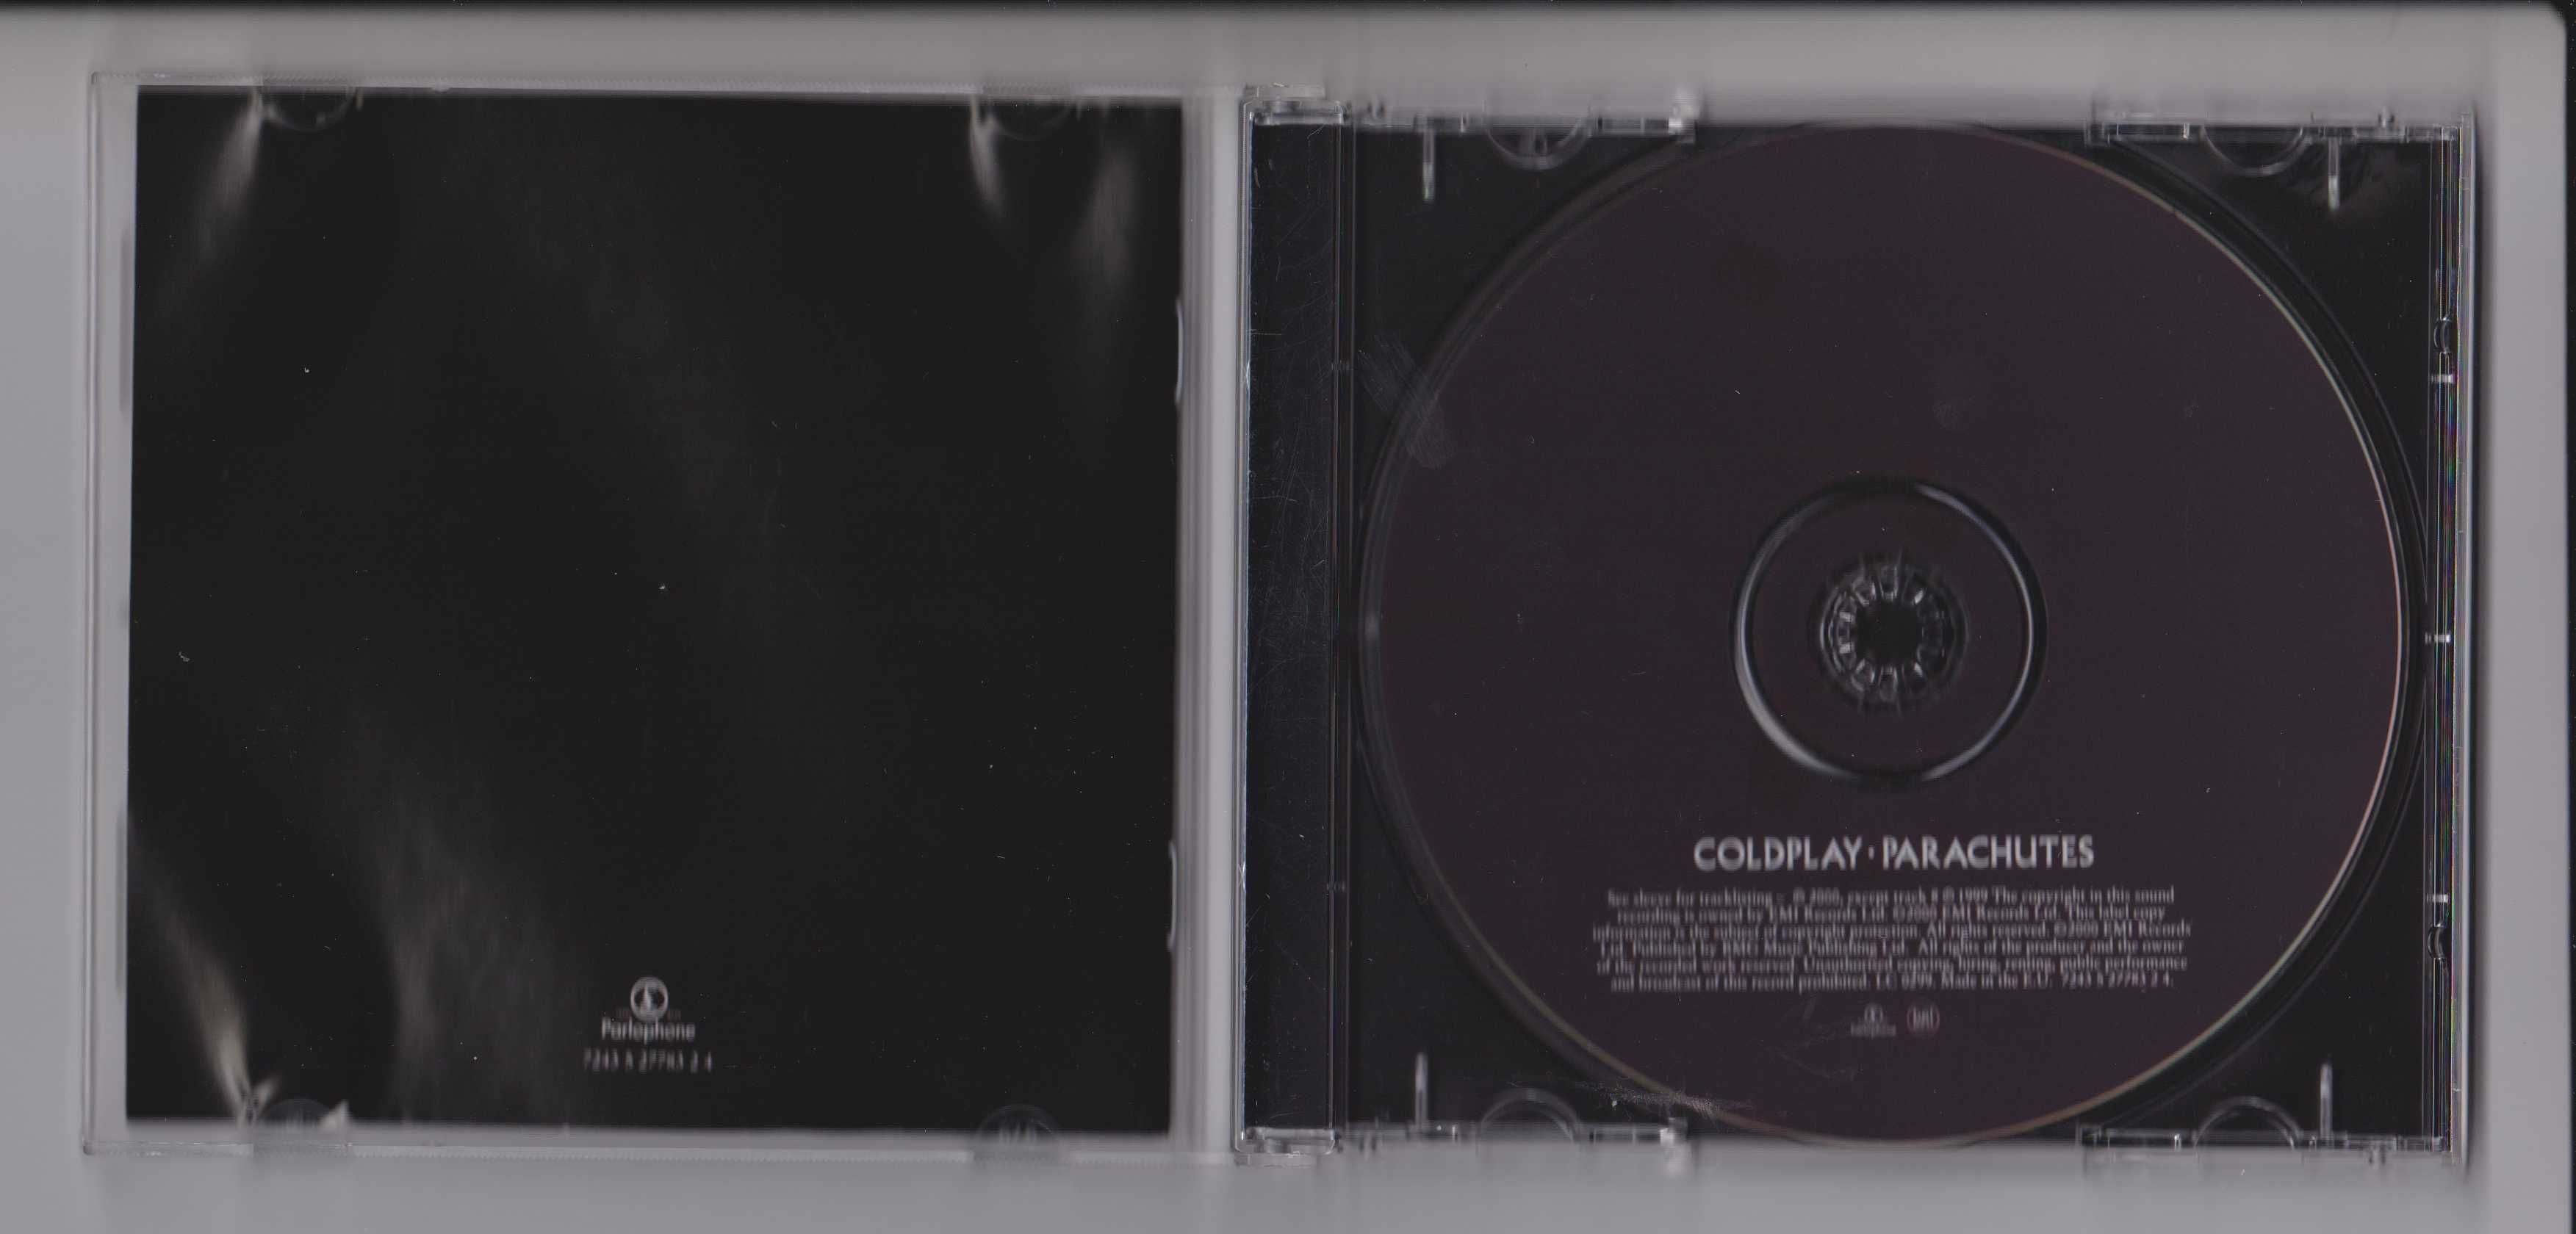 CD  Coldplay  " Parachutes "